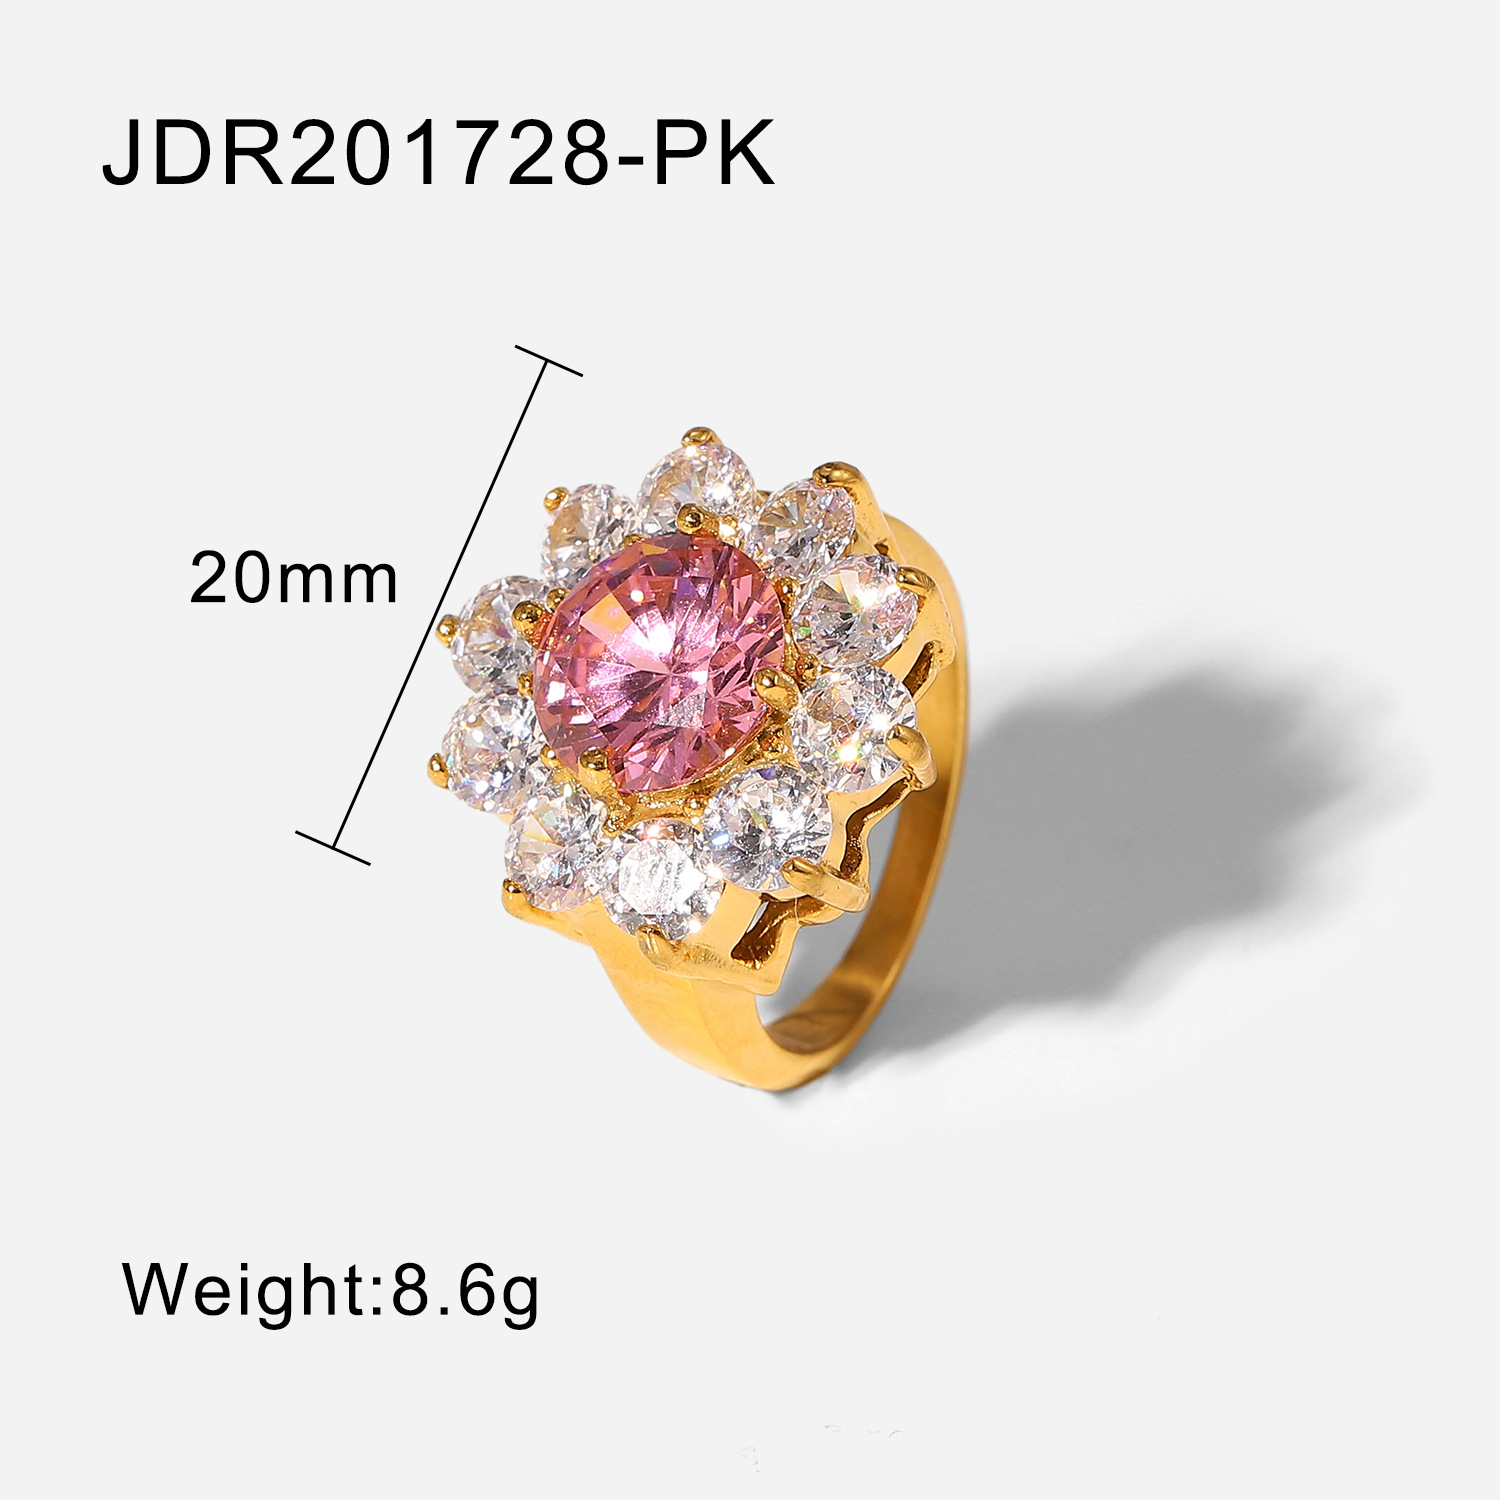 JDR201728-PK